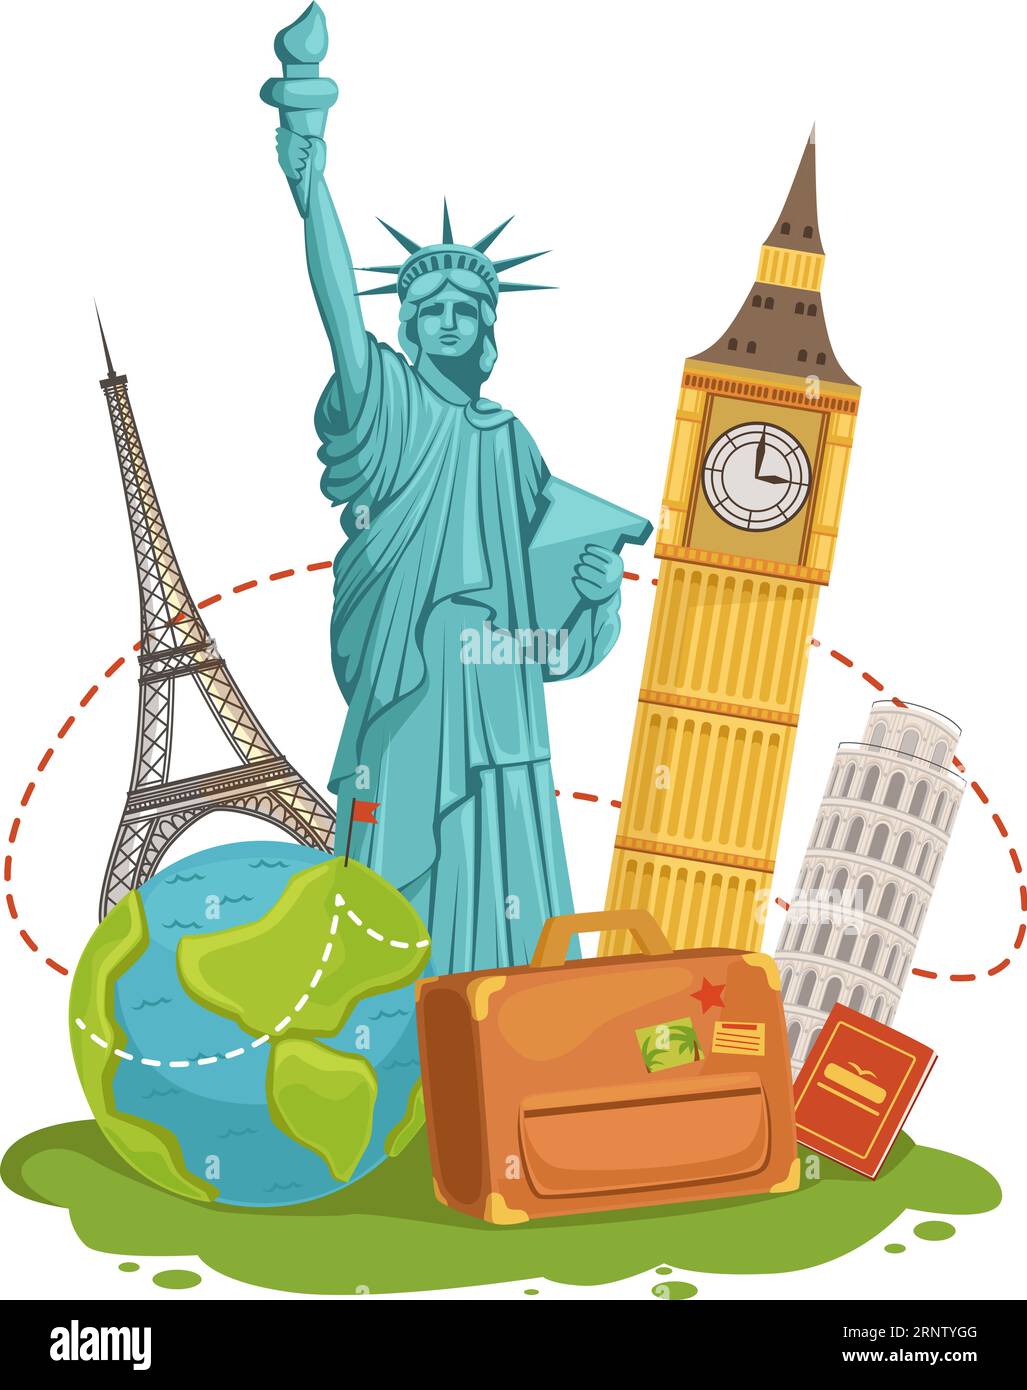 Weltweite Reiseziele. Touristikreise-Zeichentrickkonzept Stock Vektor